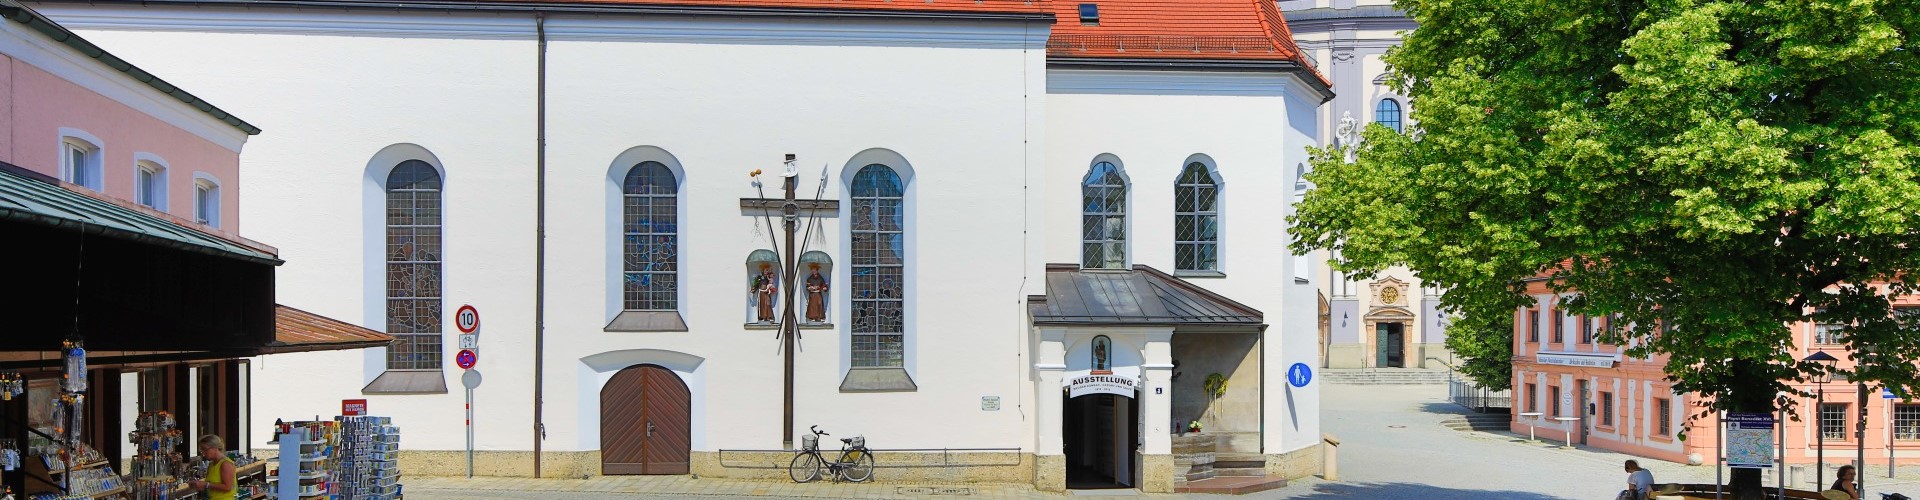 Eine Aussenaufnahme der Hl. Bruder Konradkirche Oase in Altötting.